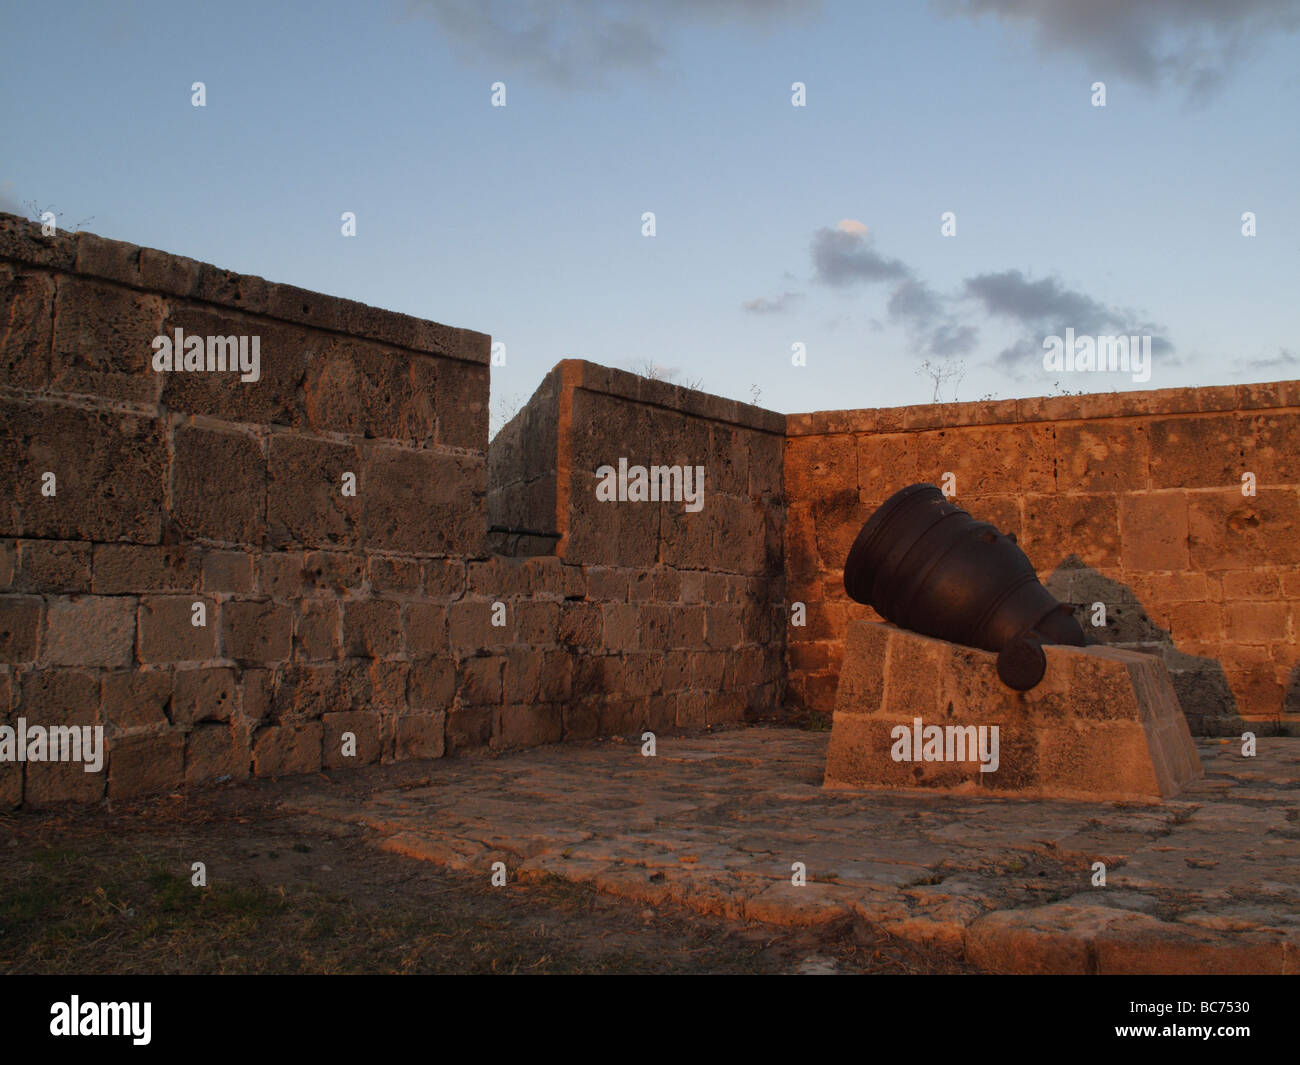 Un vieux canon de Napoléon dans les murs de la mer ottomane dans la vieille ville d'Acre, Akko ou le nord d'Israël Banque D'Images